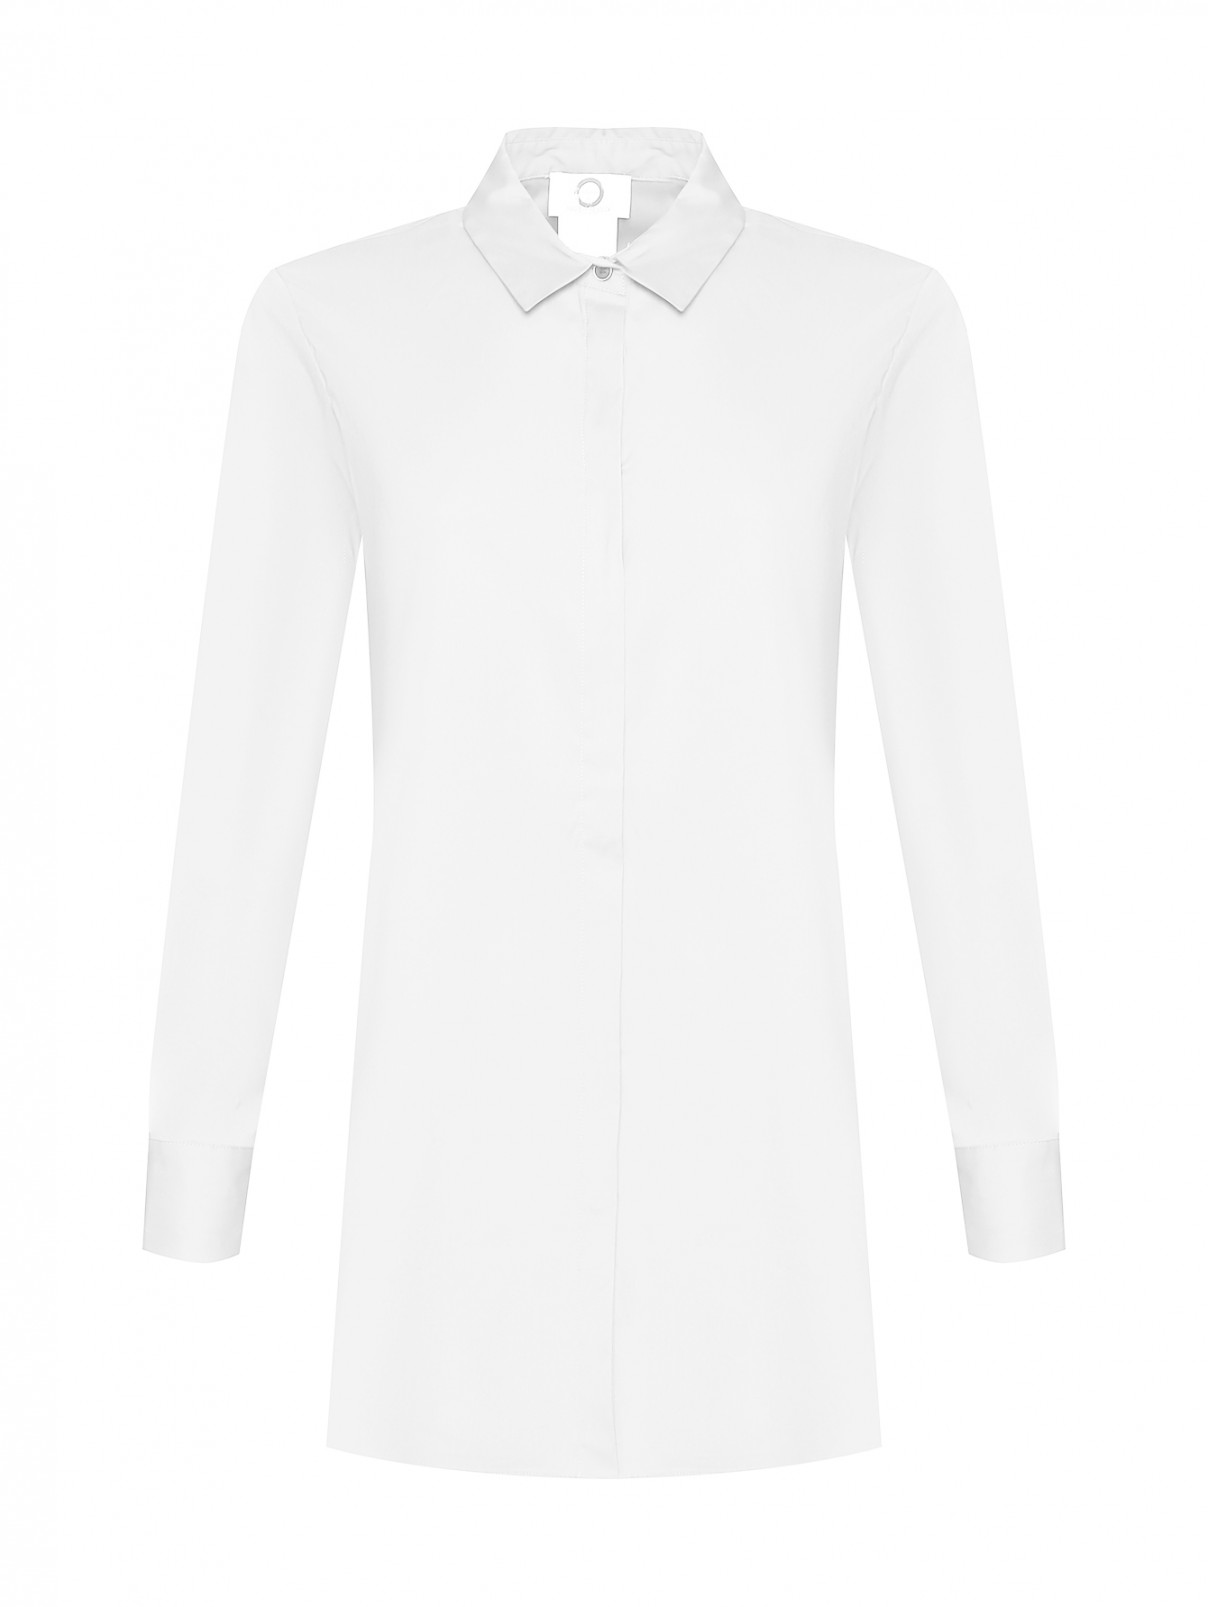 Рубашка с рядом пуговиц по бокам Marina Rinaldi  –  Общий вид  – Цвет:  Белый